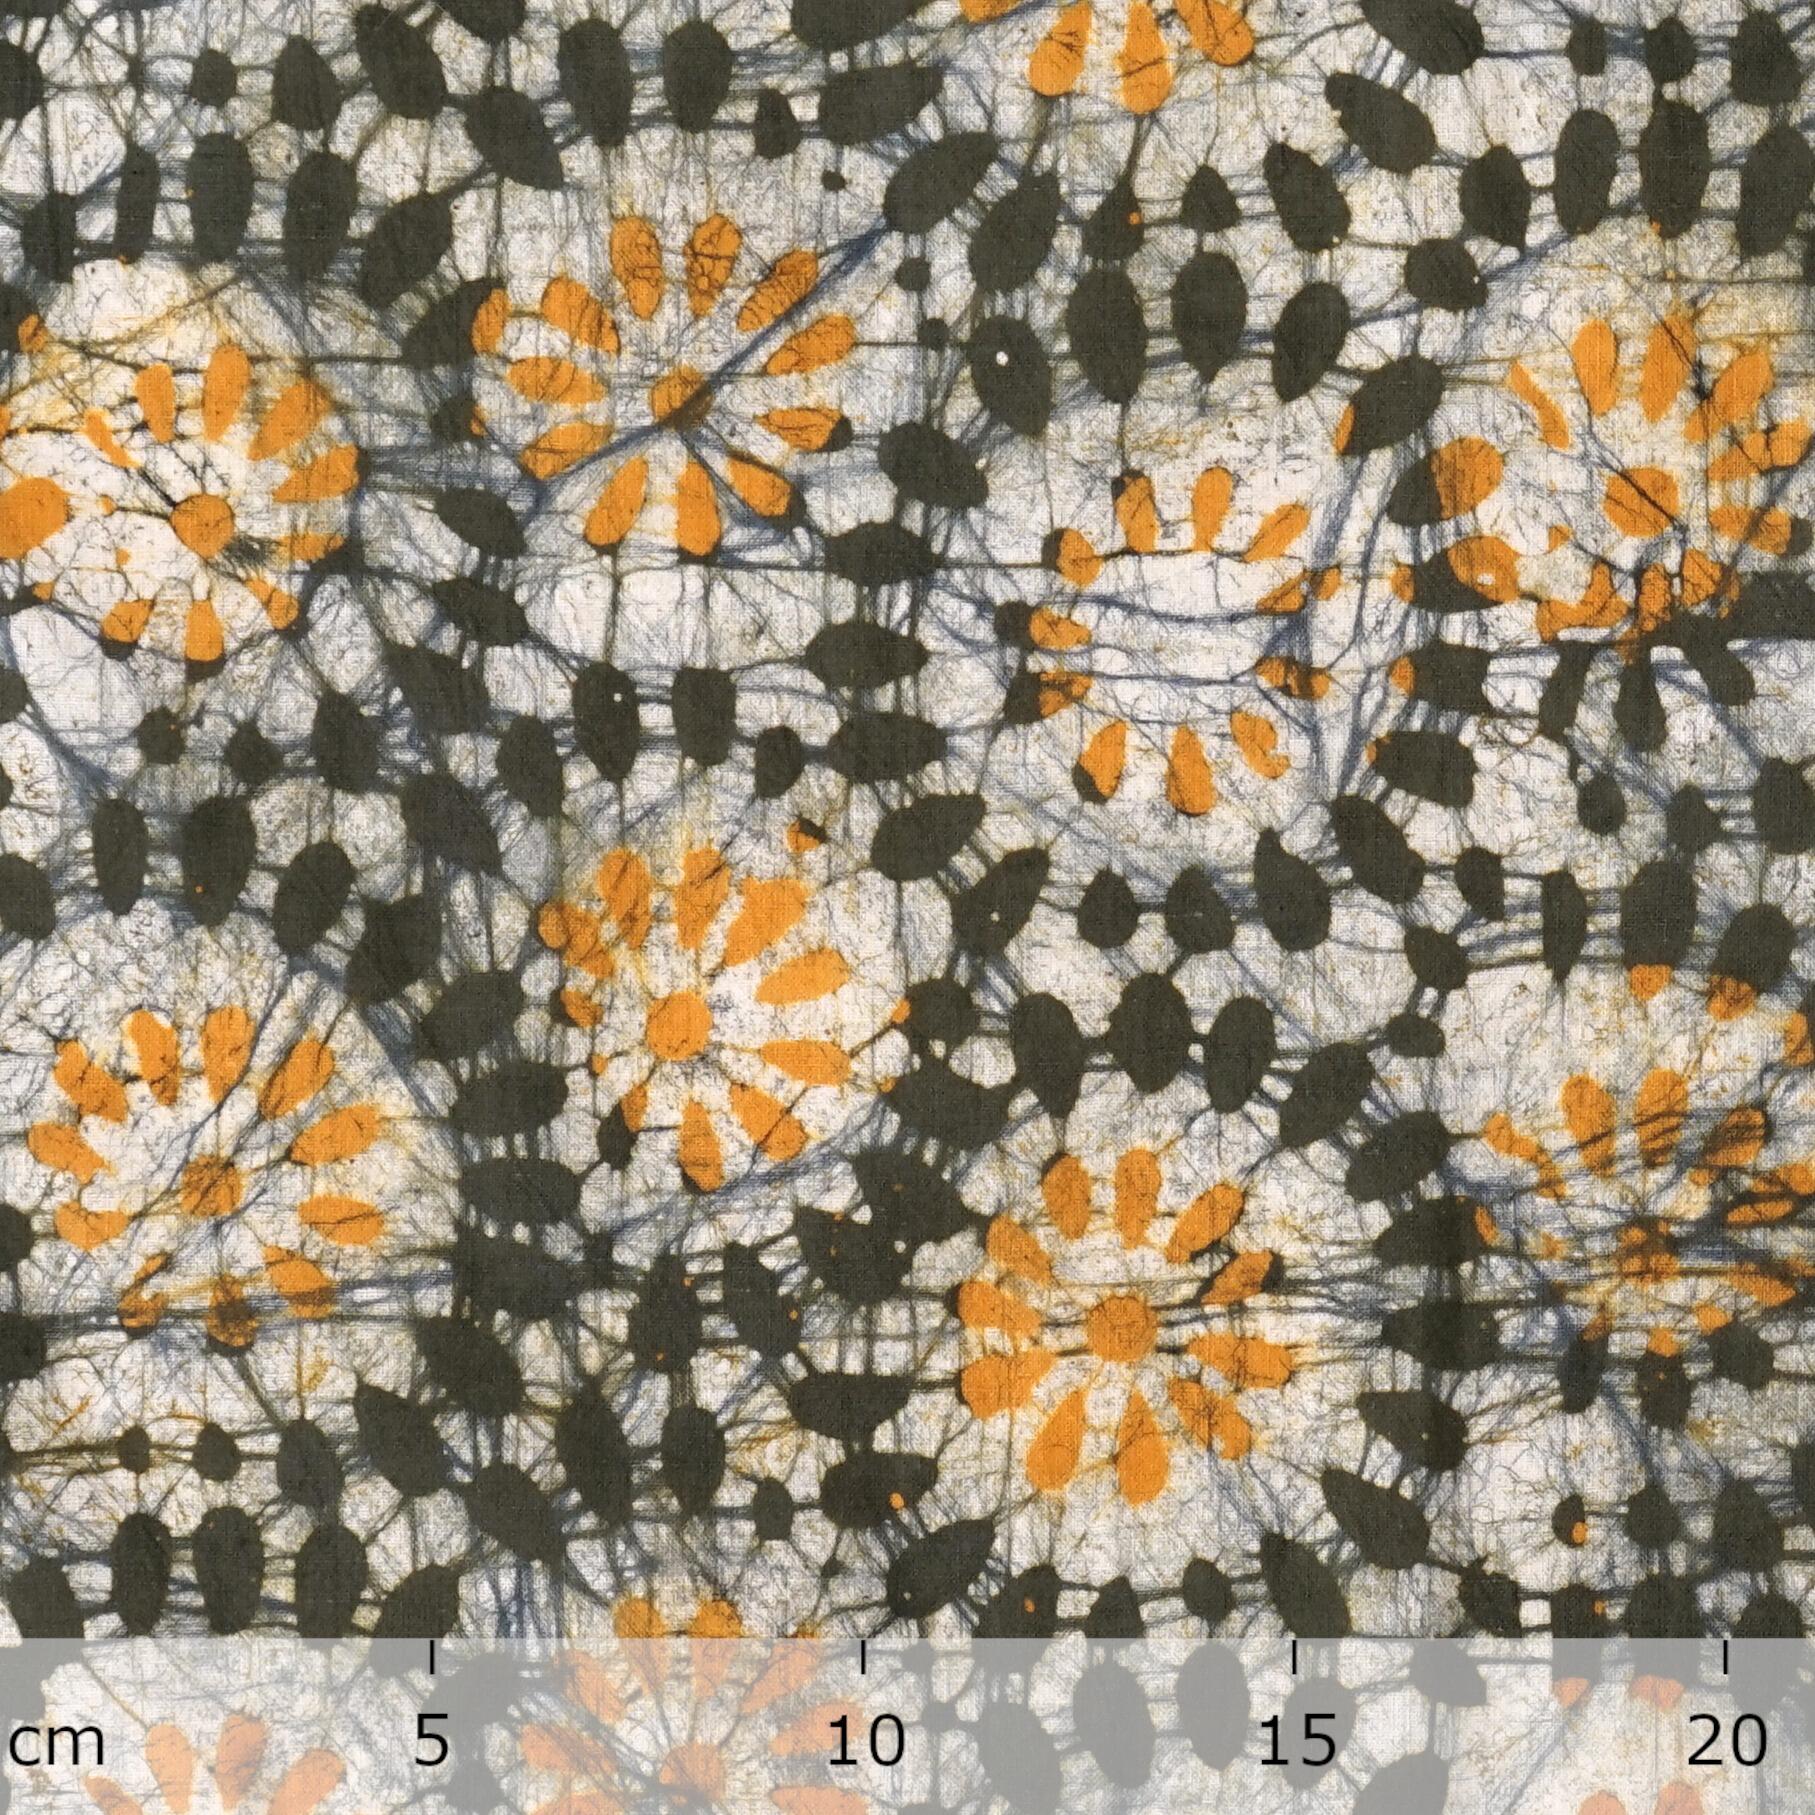 100% Block-Printed Batik Cotton Fabric From India - Jalebi Motif - Ruler